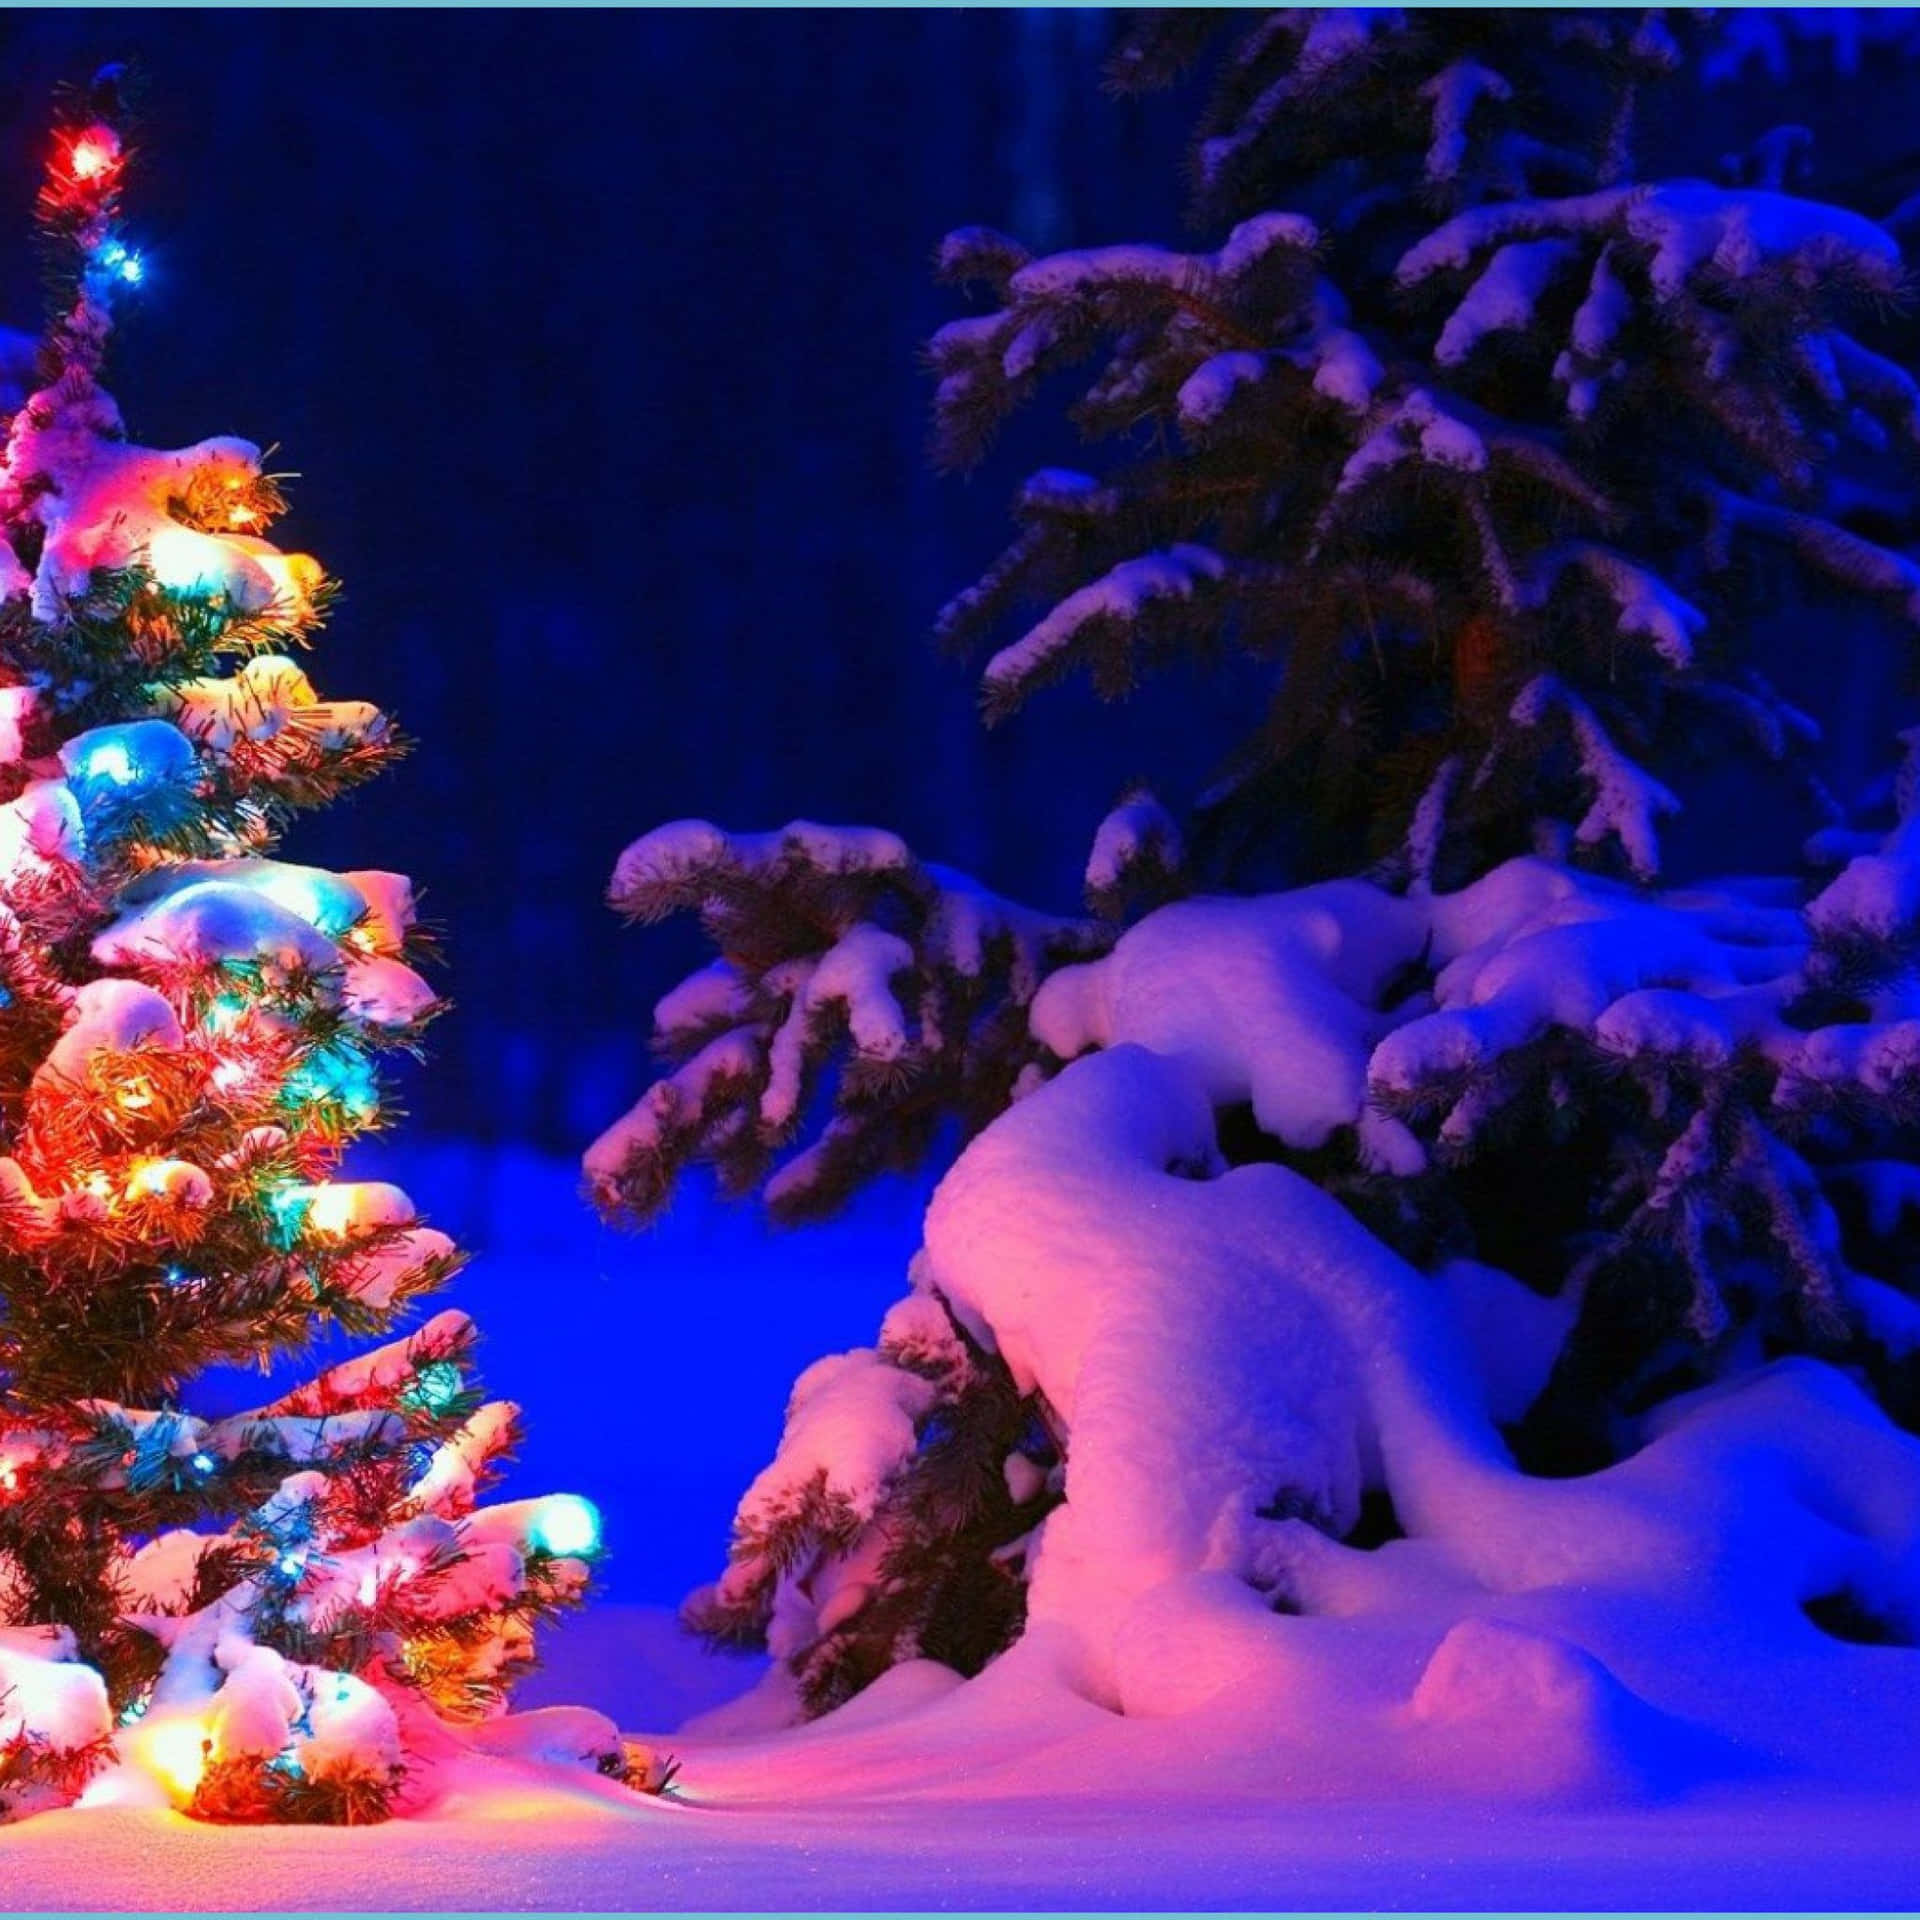 Celebralo Spirito Del Natale Con Una Coperta Bianca Di Neve